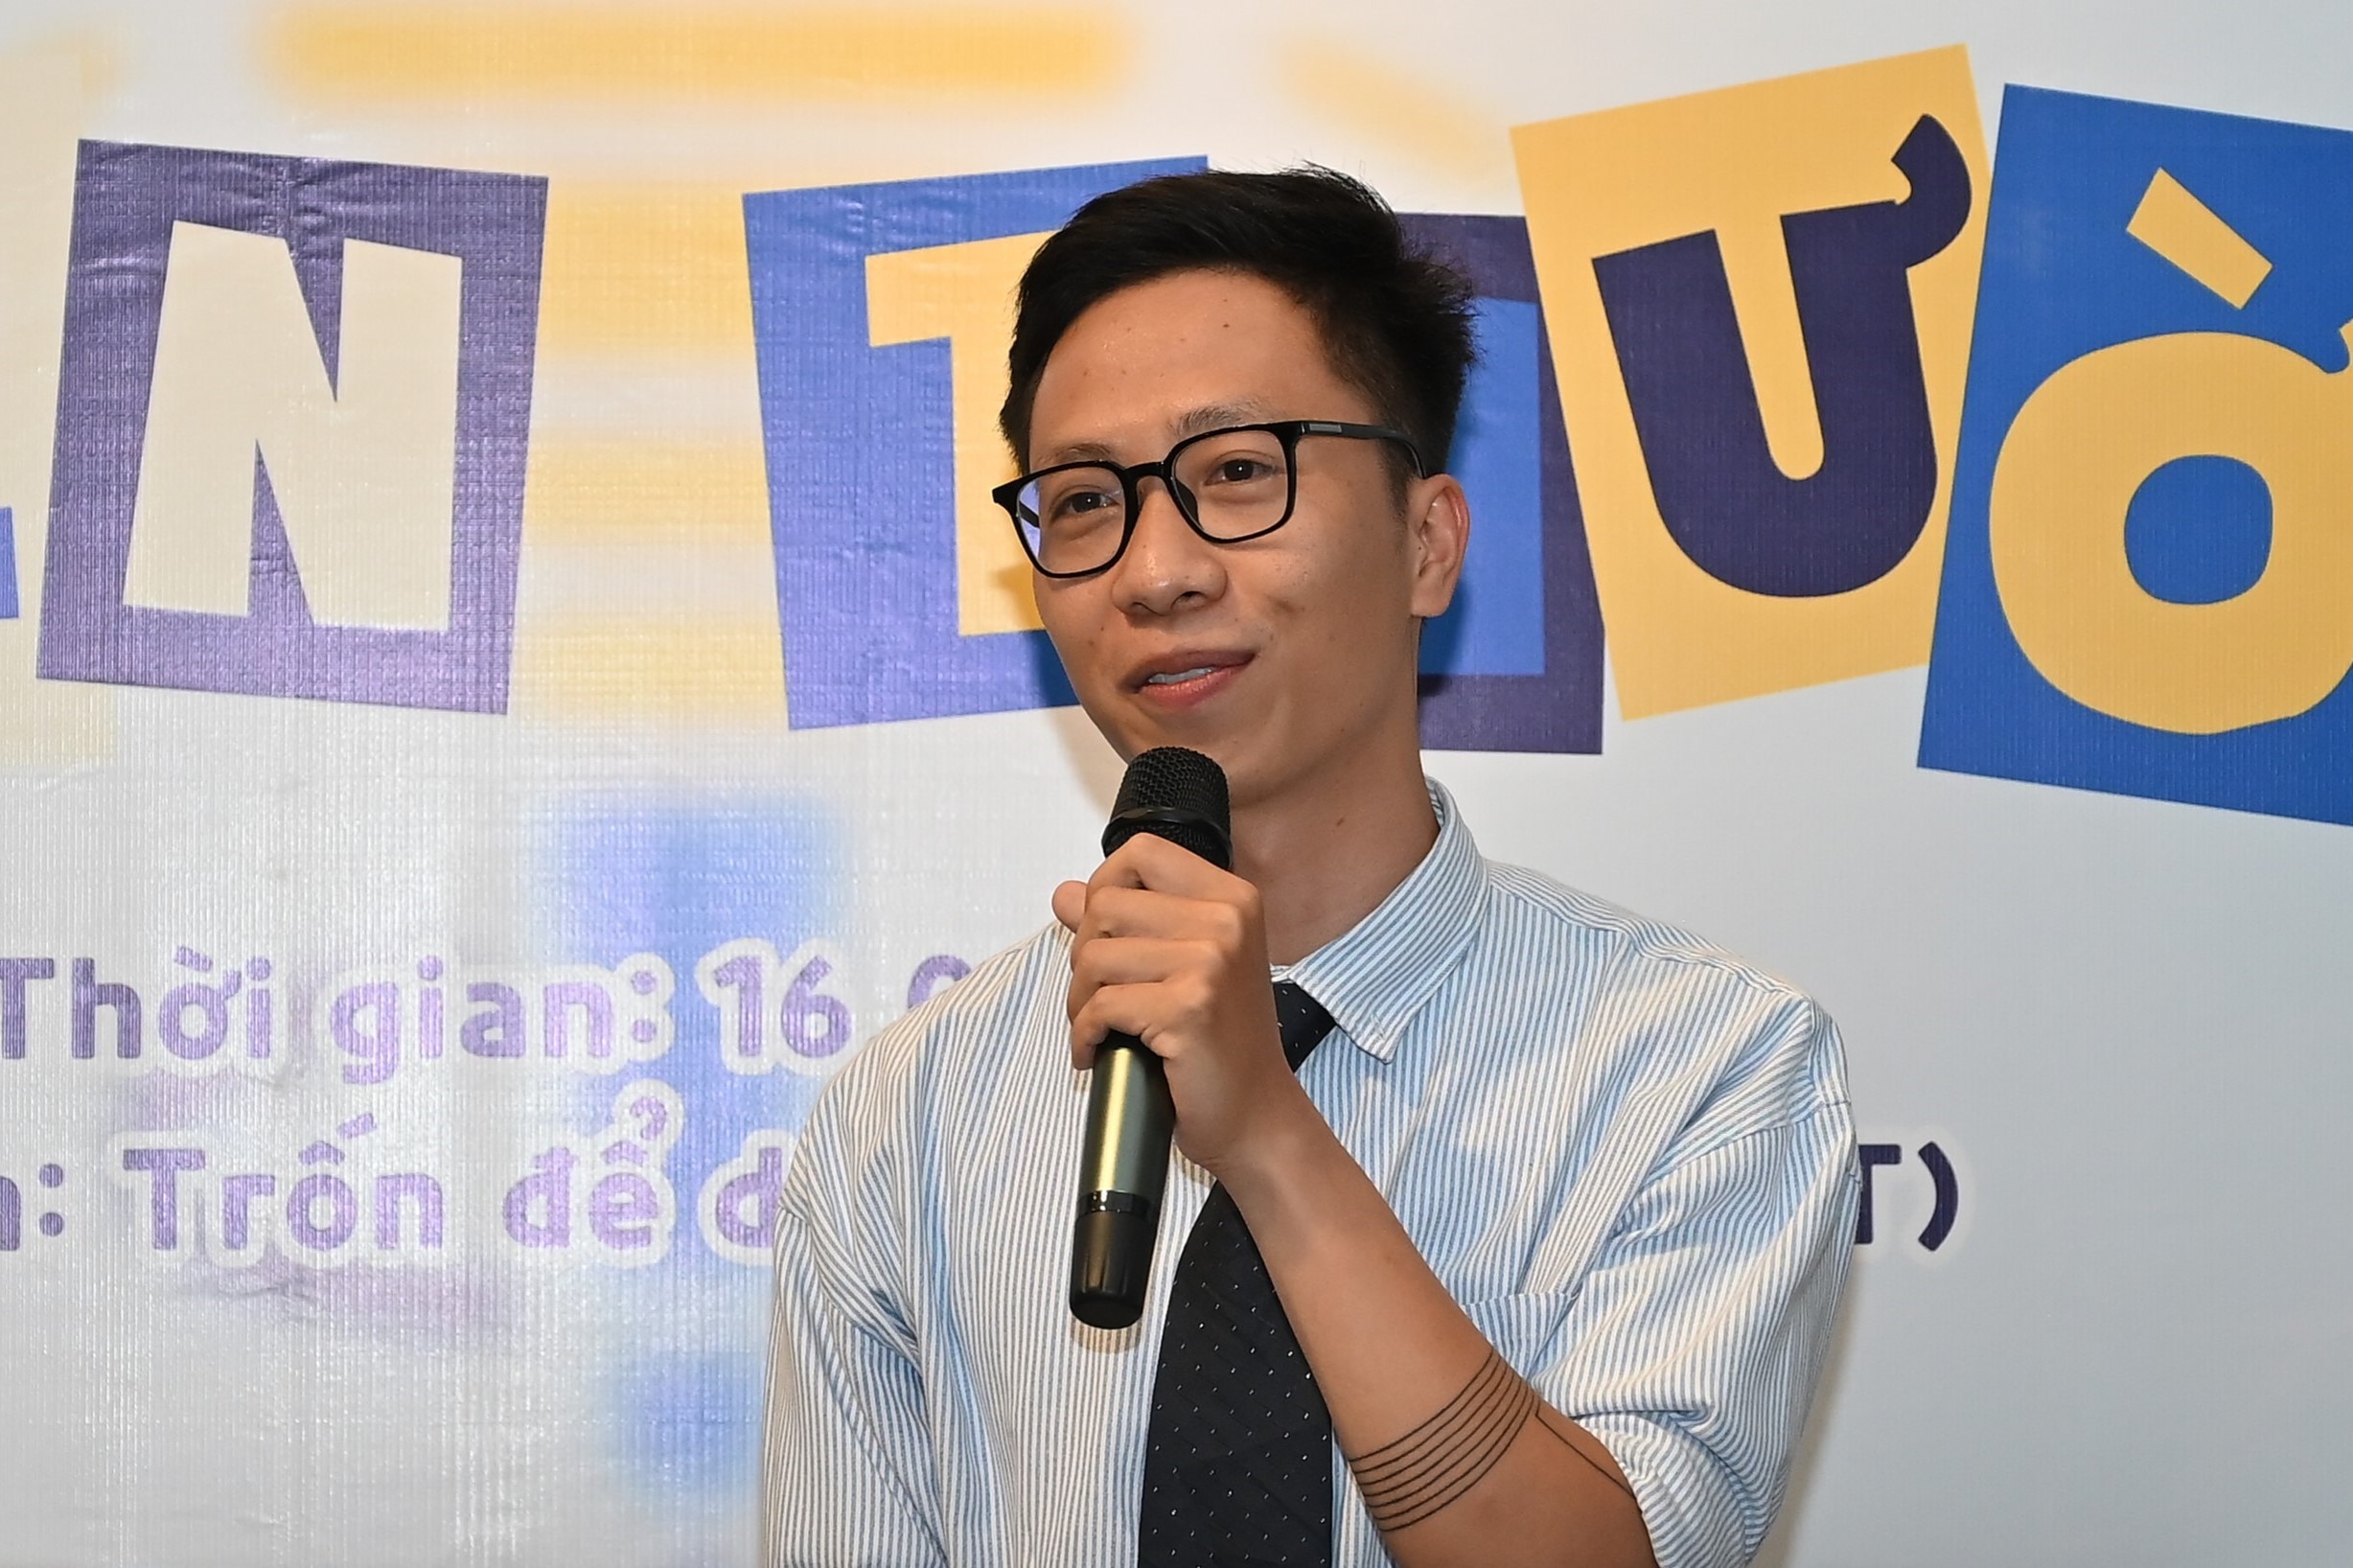 Anh Đào Minh Tiến (29 tuổi), chủ kênh YouTube 